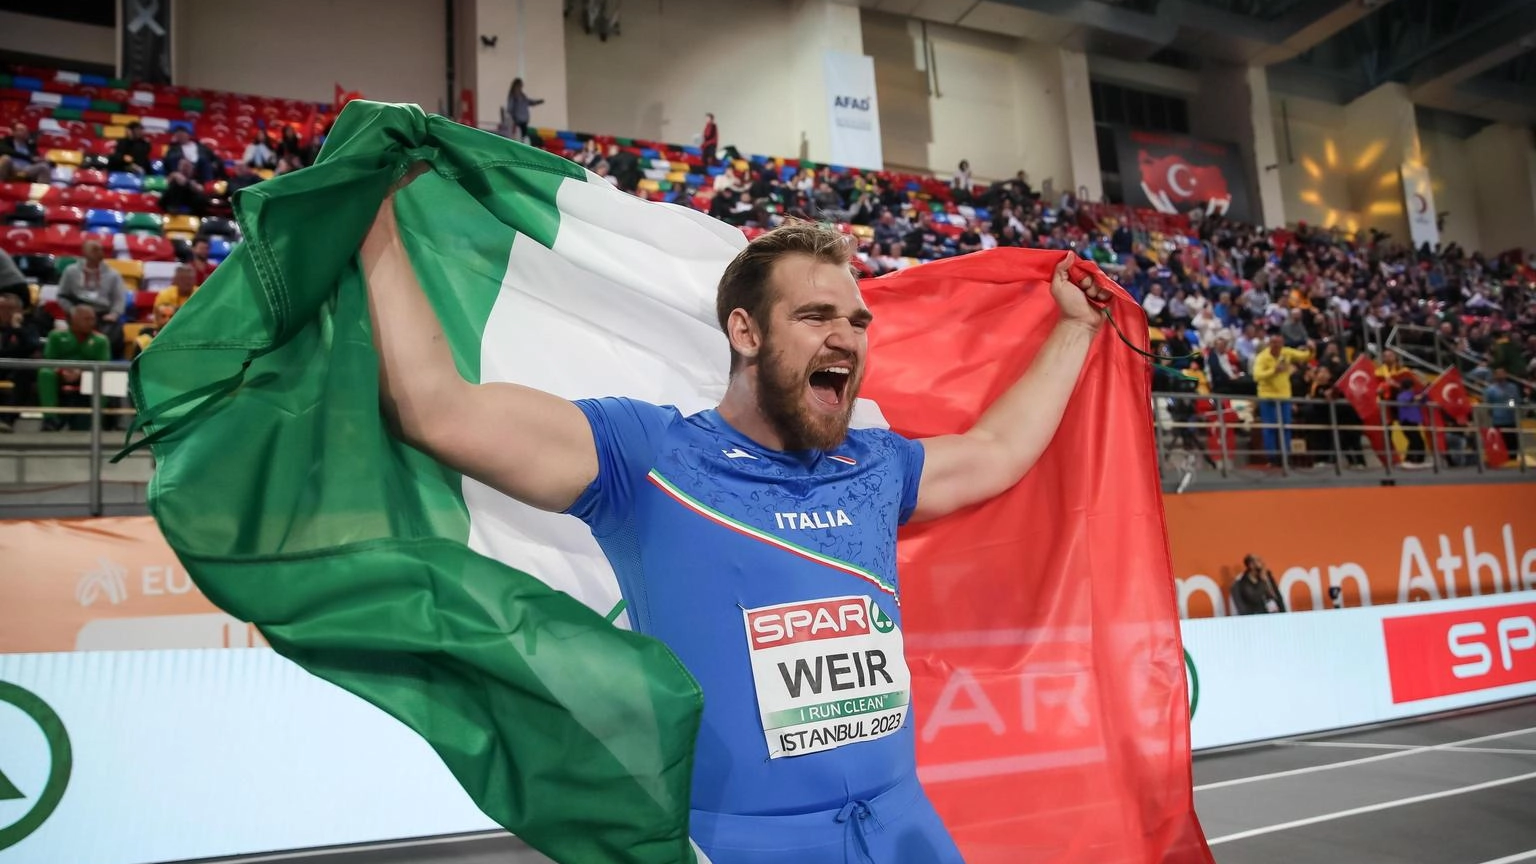 Atletica: l'azzurro Weir 'con Fabbri apriamo nuova era del peso'